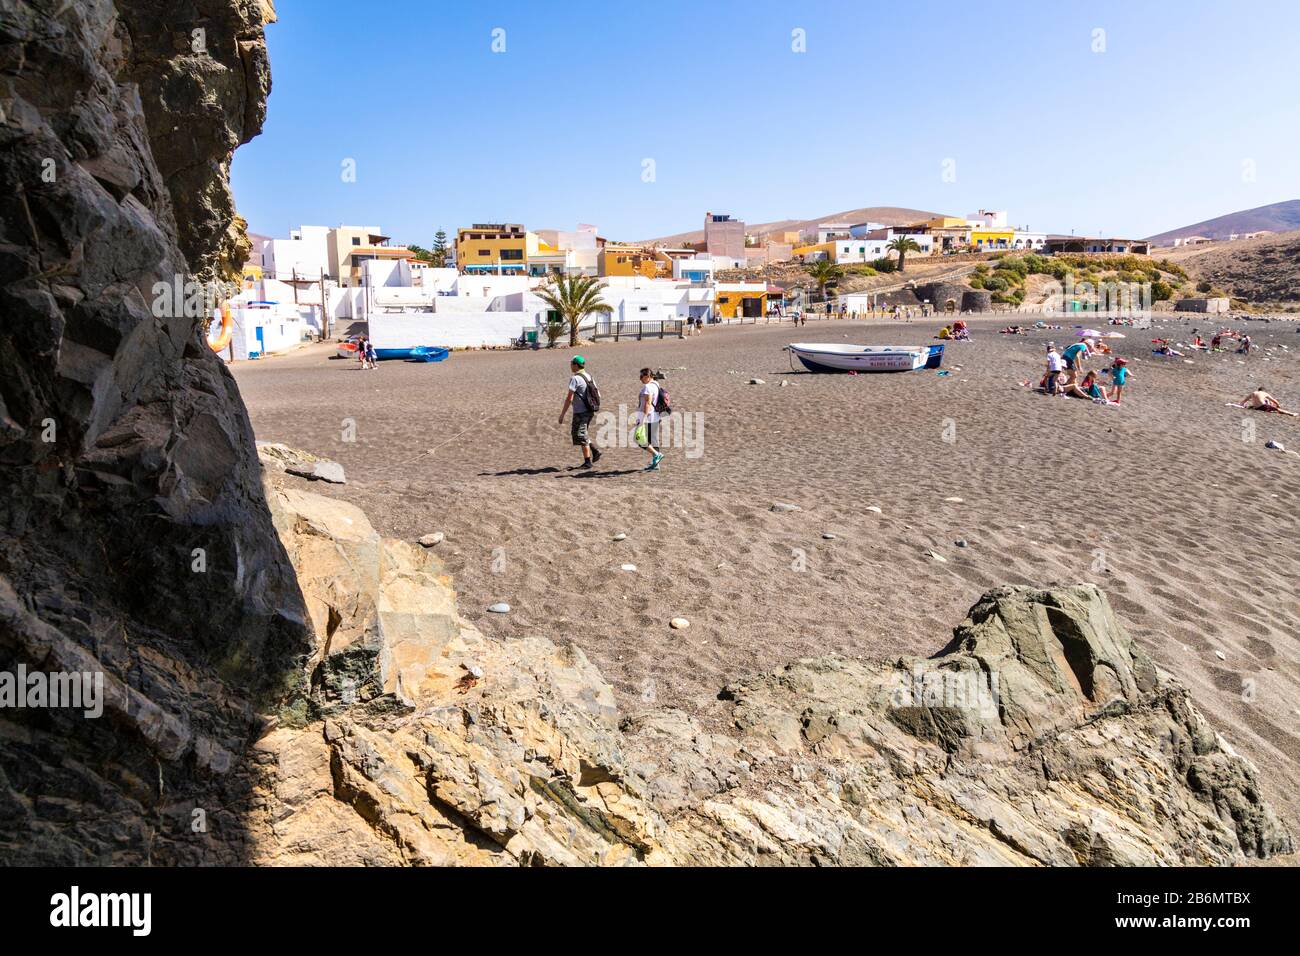 Touristes sur la plage d'Ajuy sur la côte ouest de l'île des Canaries de Fuerteventura Banque D'Images